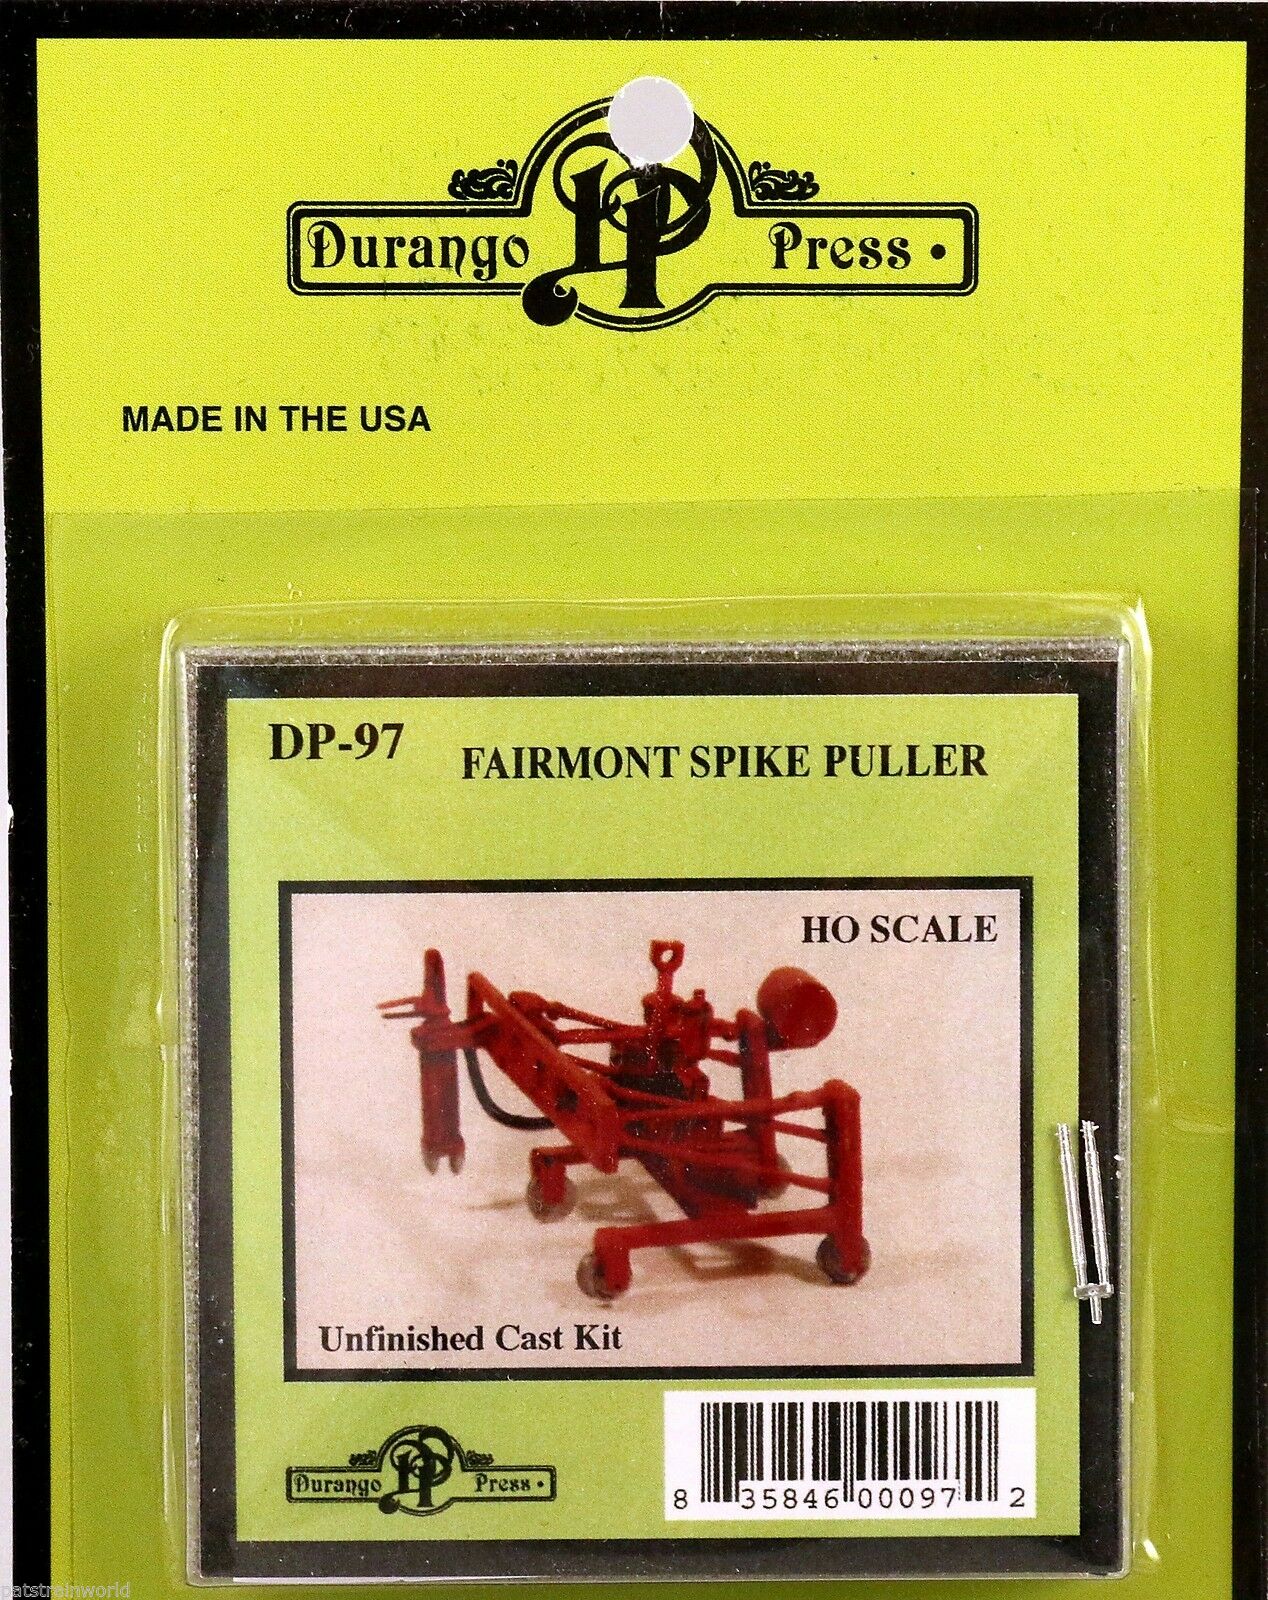 Durango Press 97 Ho Fairmont Spike Puller